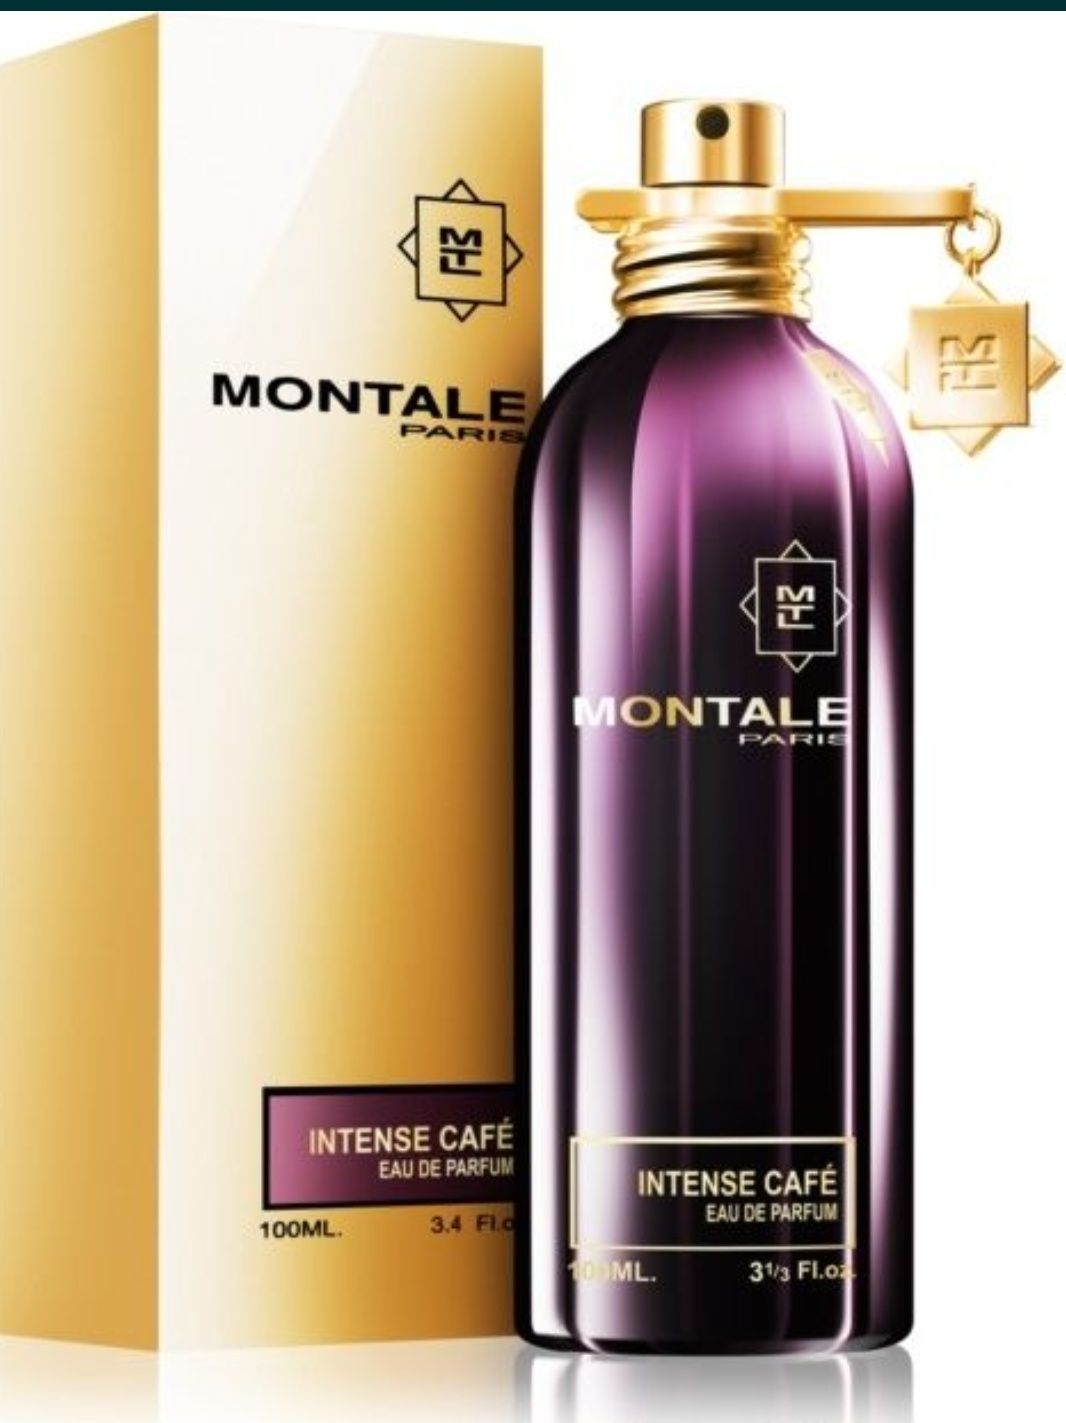 Montale Intense Cafe 100ml sigilat, original, cu factura